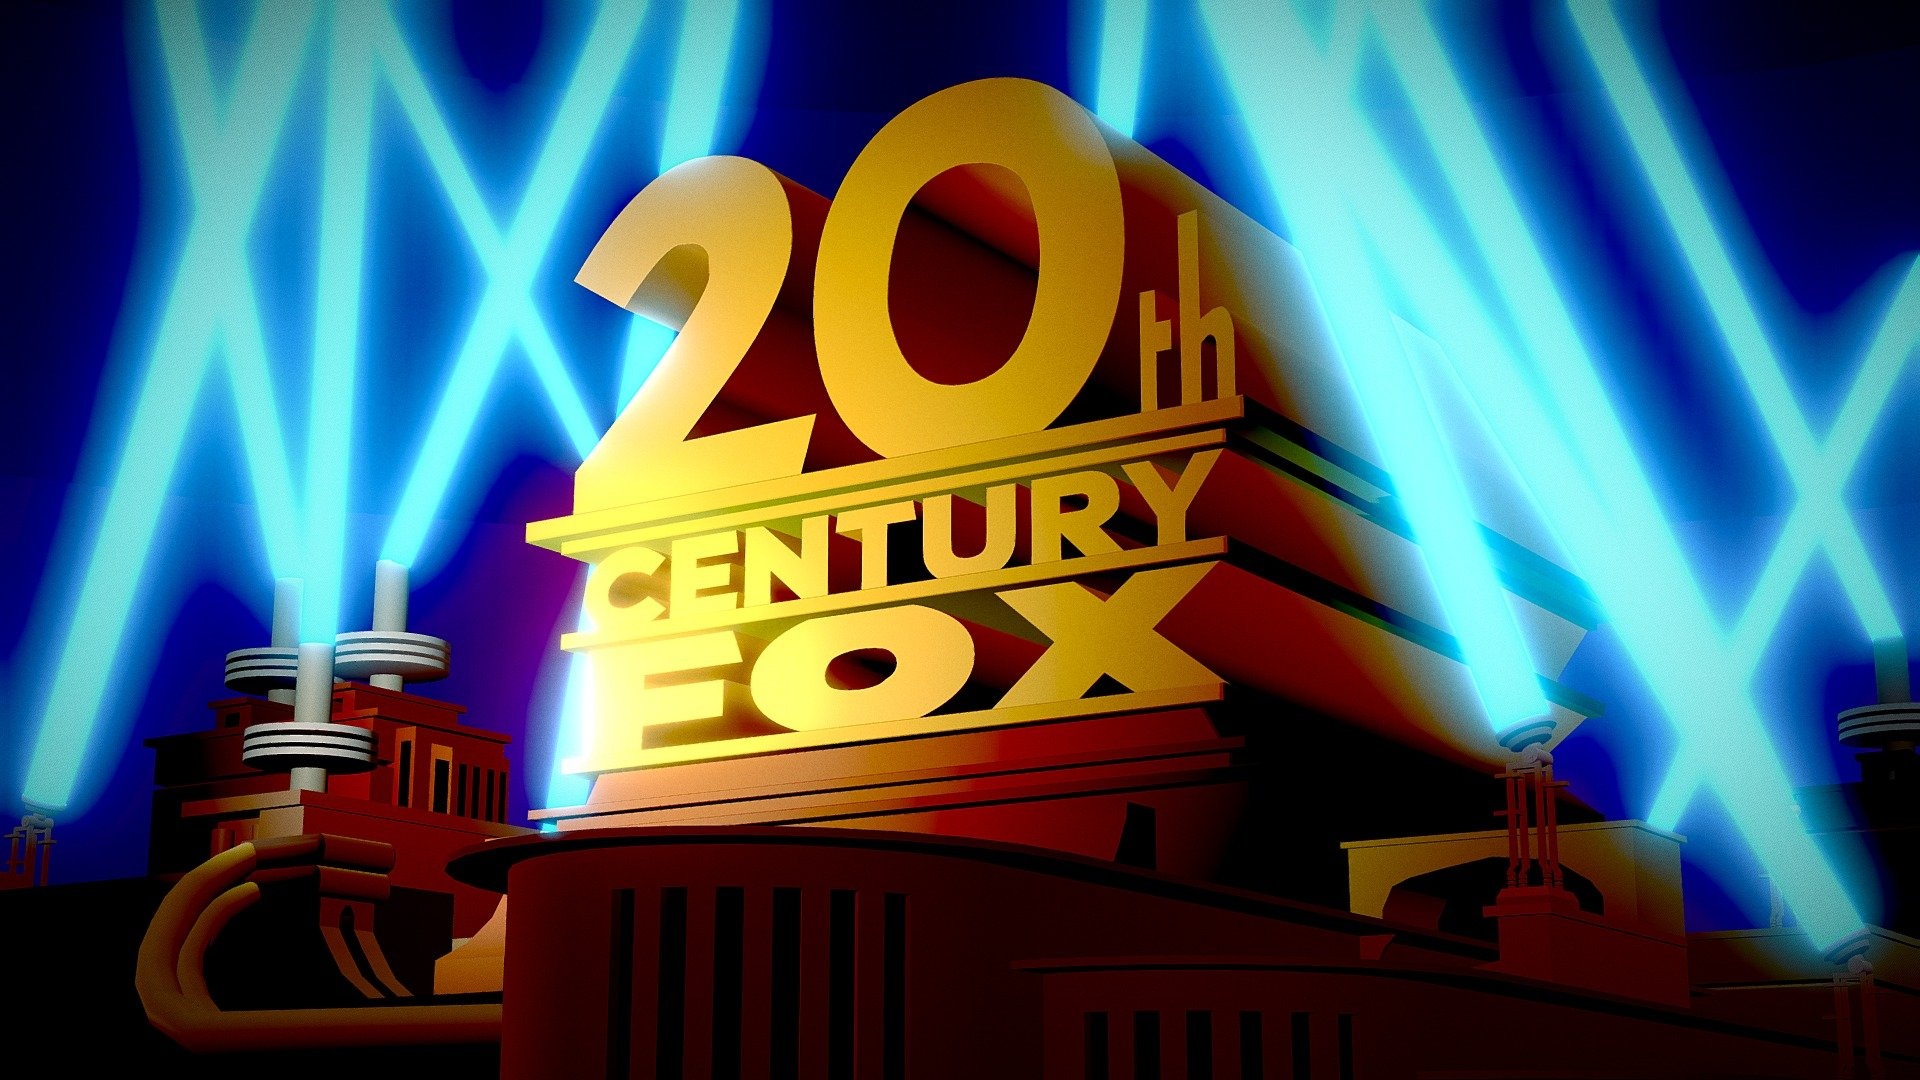 XX Century Fox, Logo remake, 3D model, Fan tribute, 1920x1080 Full HD Desktop